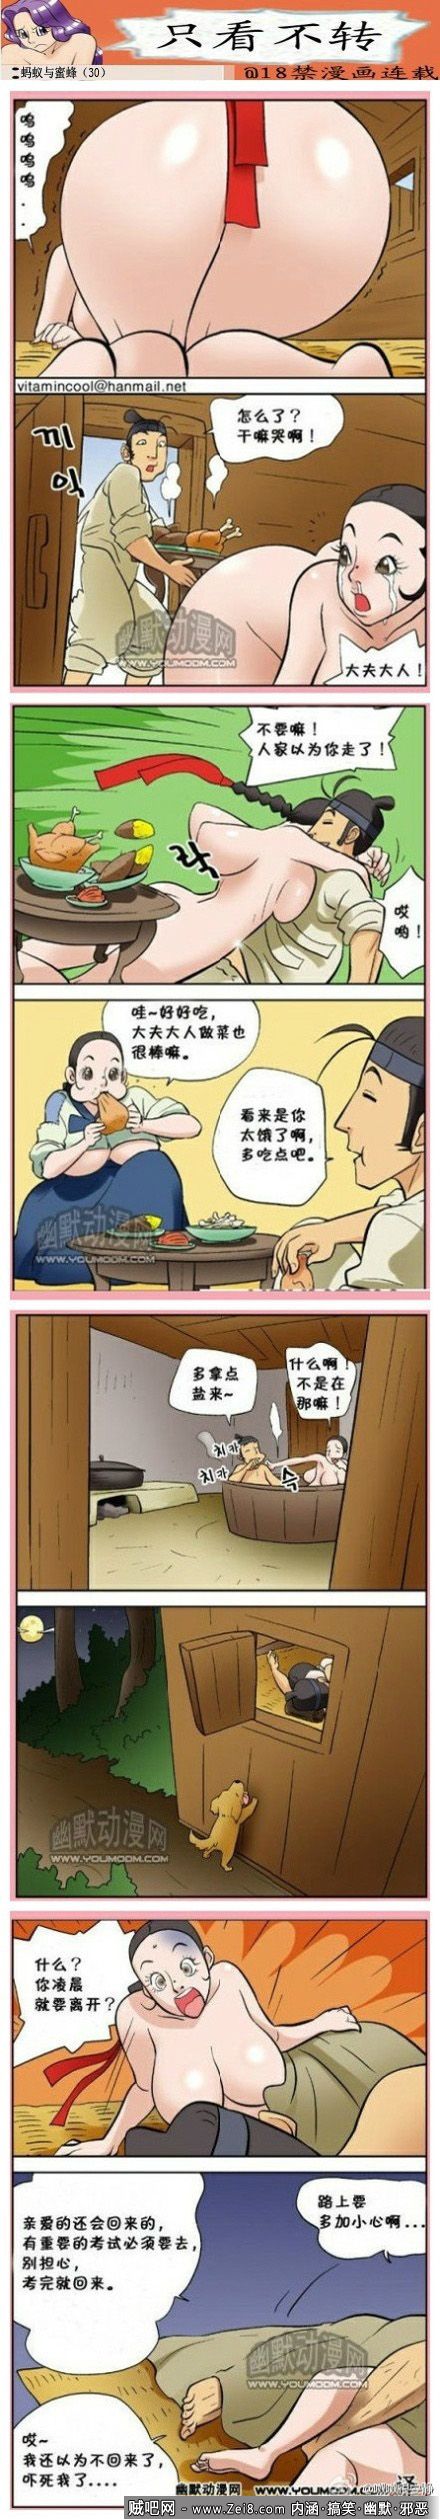 [妻子系列韩国漫画]：出门远行